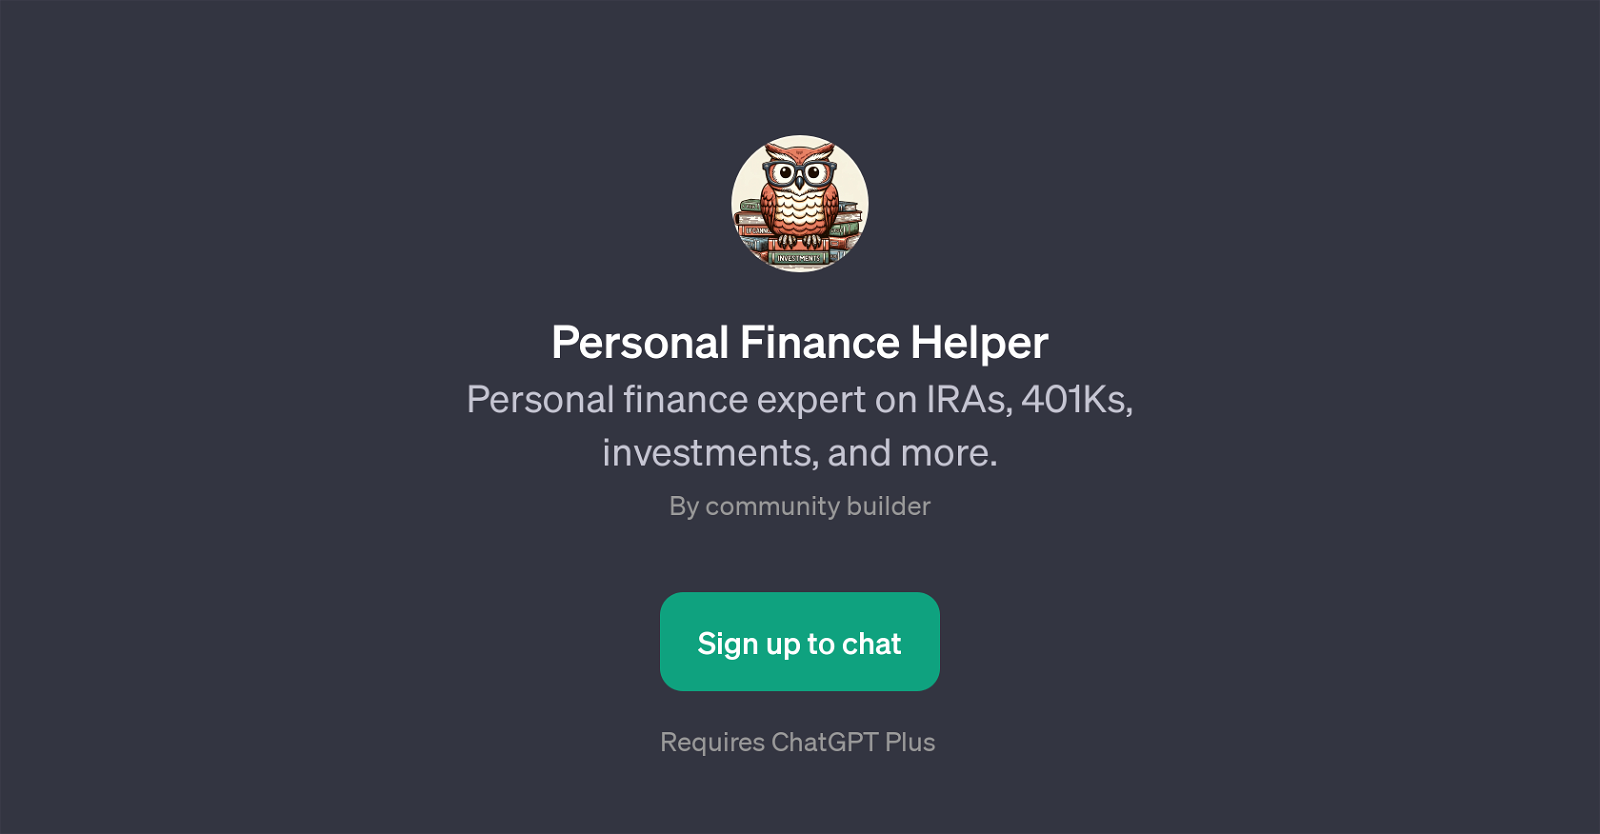 Personal Finance Helper website